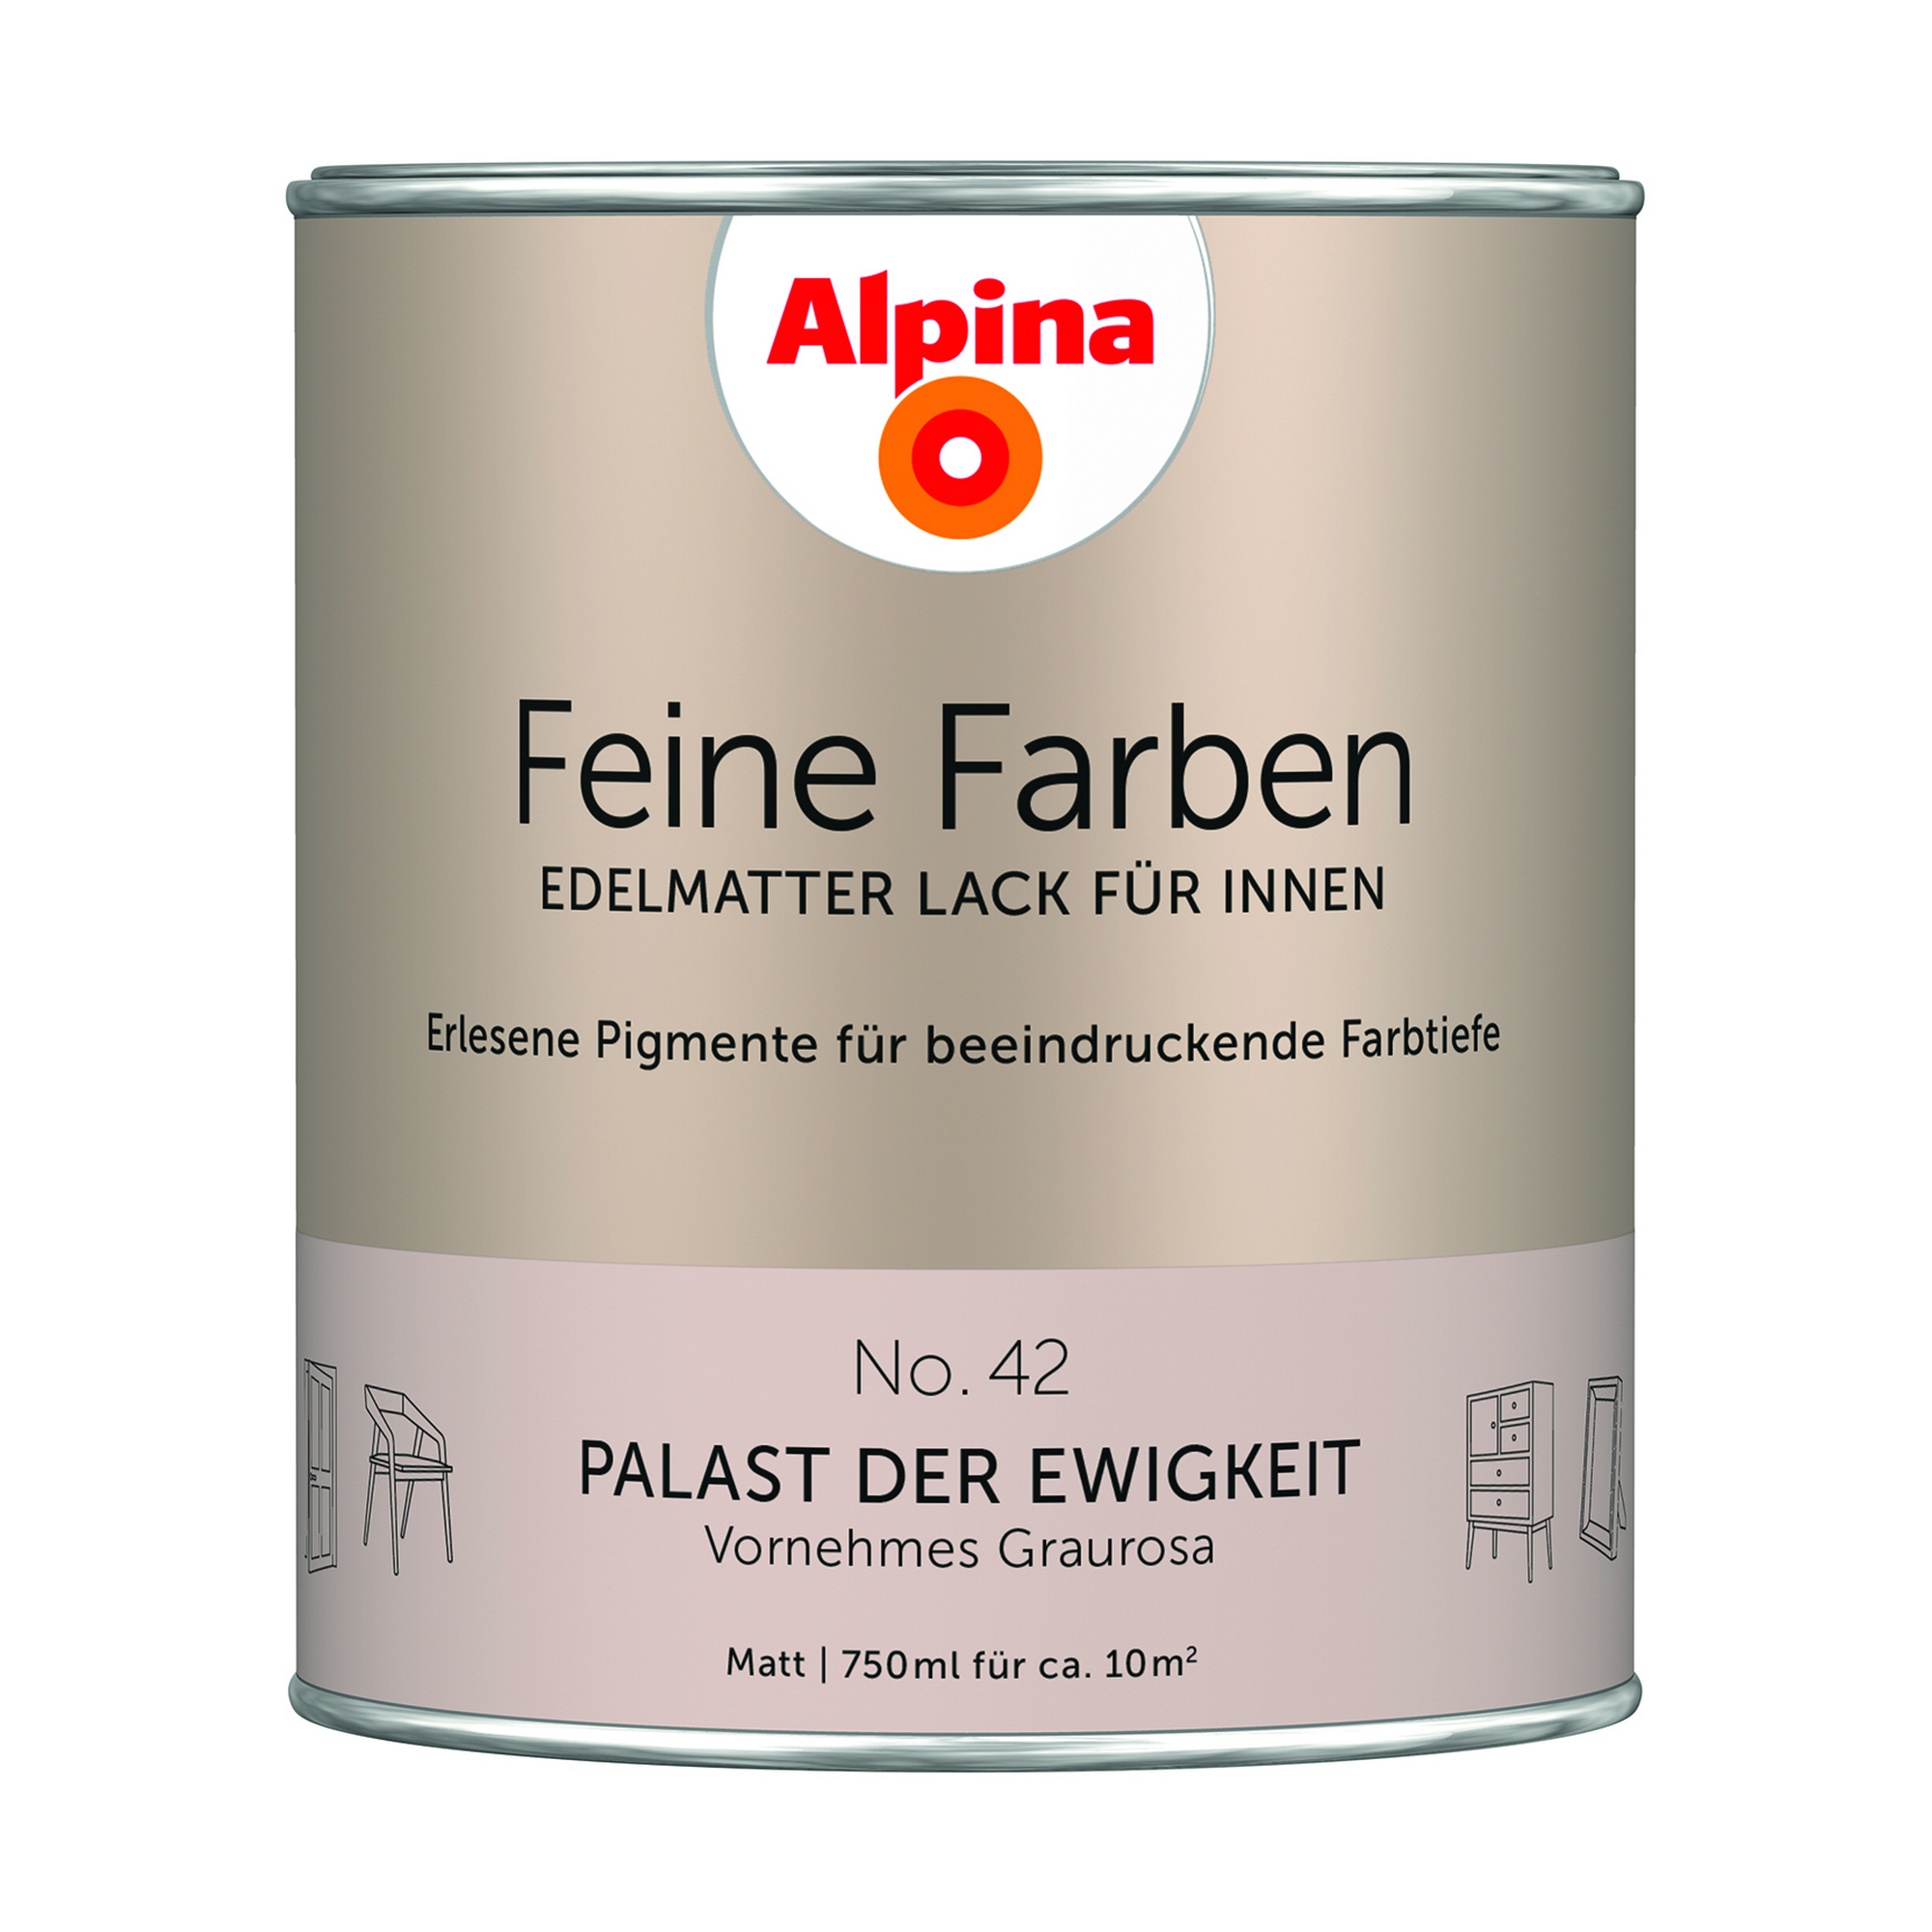 Feine Farben 'Palast der Ewigkeit' cremebeige matt 750 ml + product picture